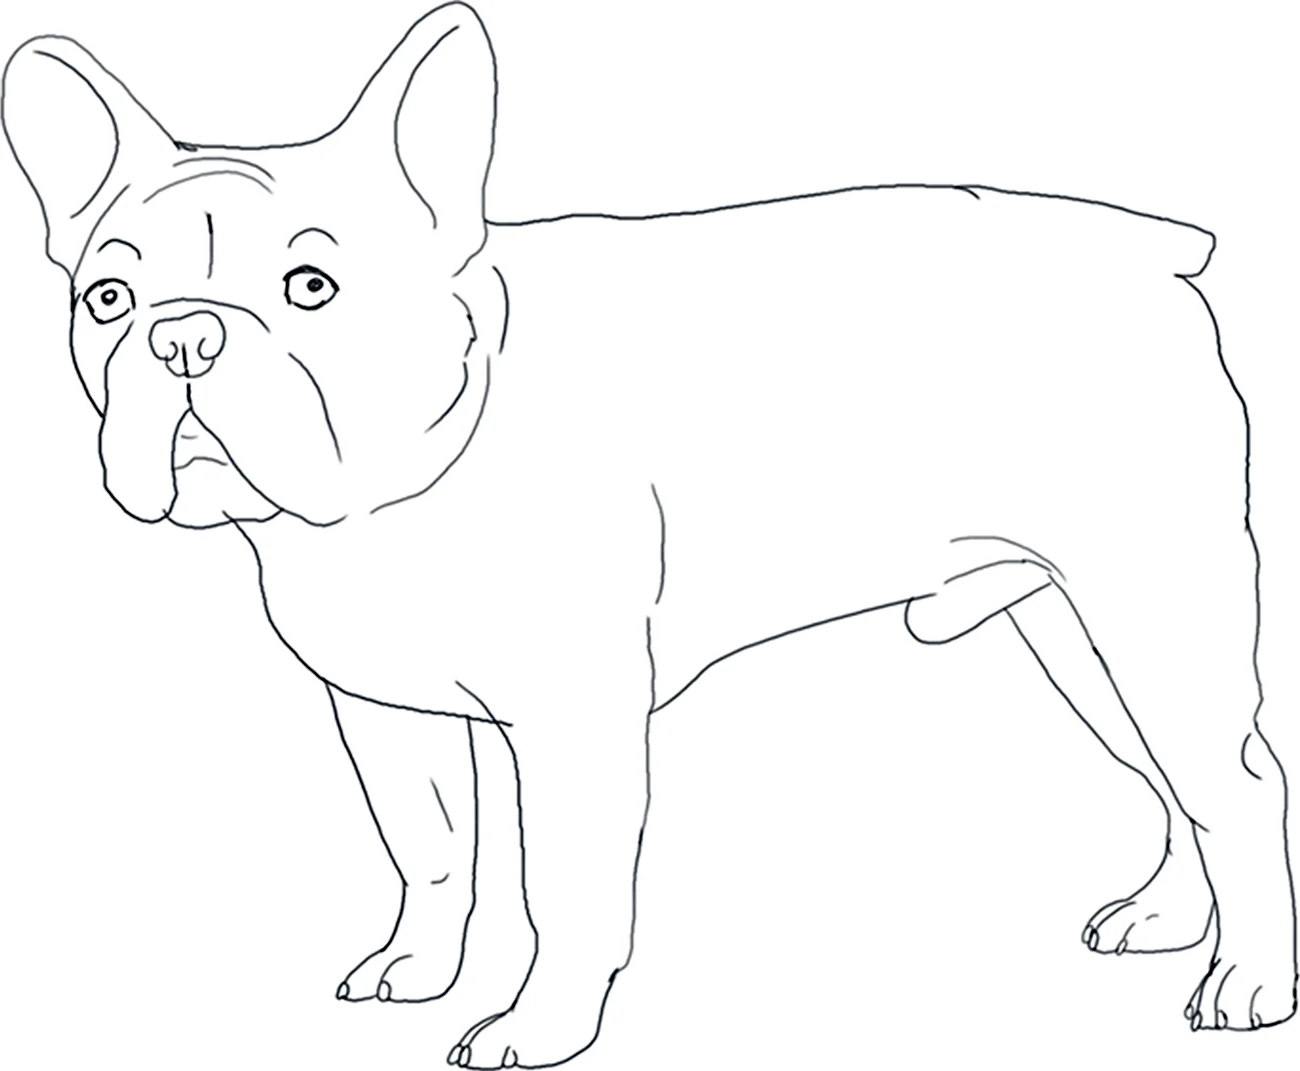 Раскраска собака французский бульдог. Для срисовки